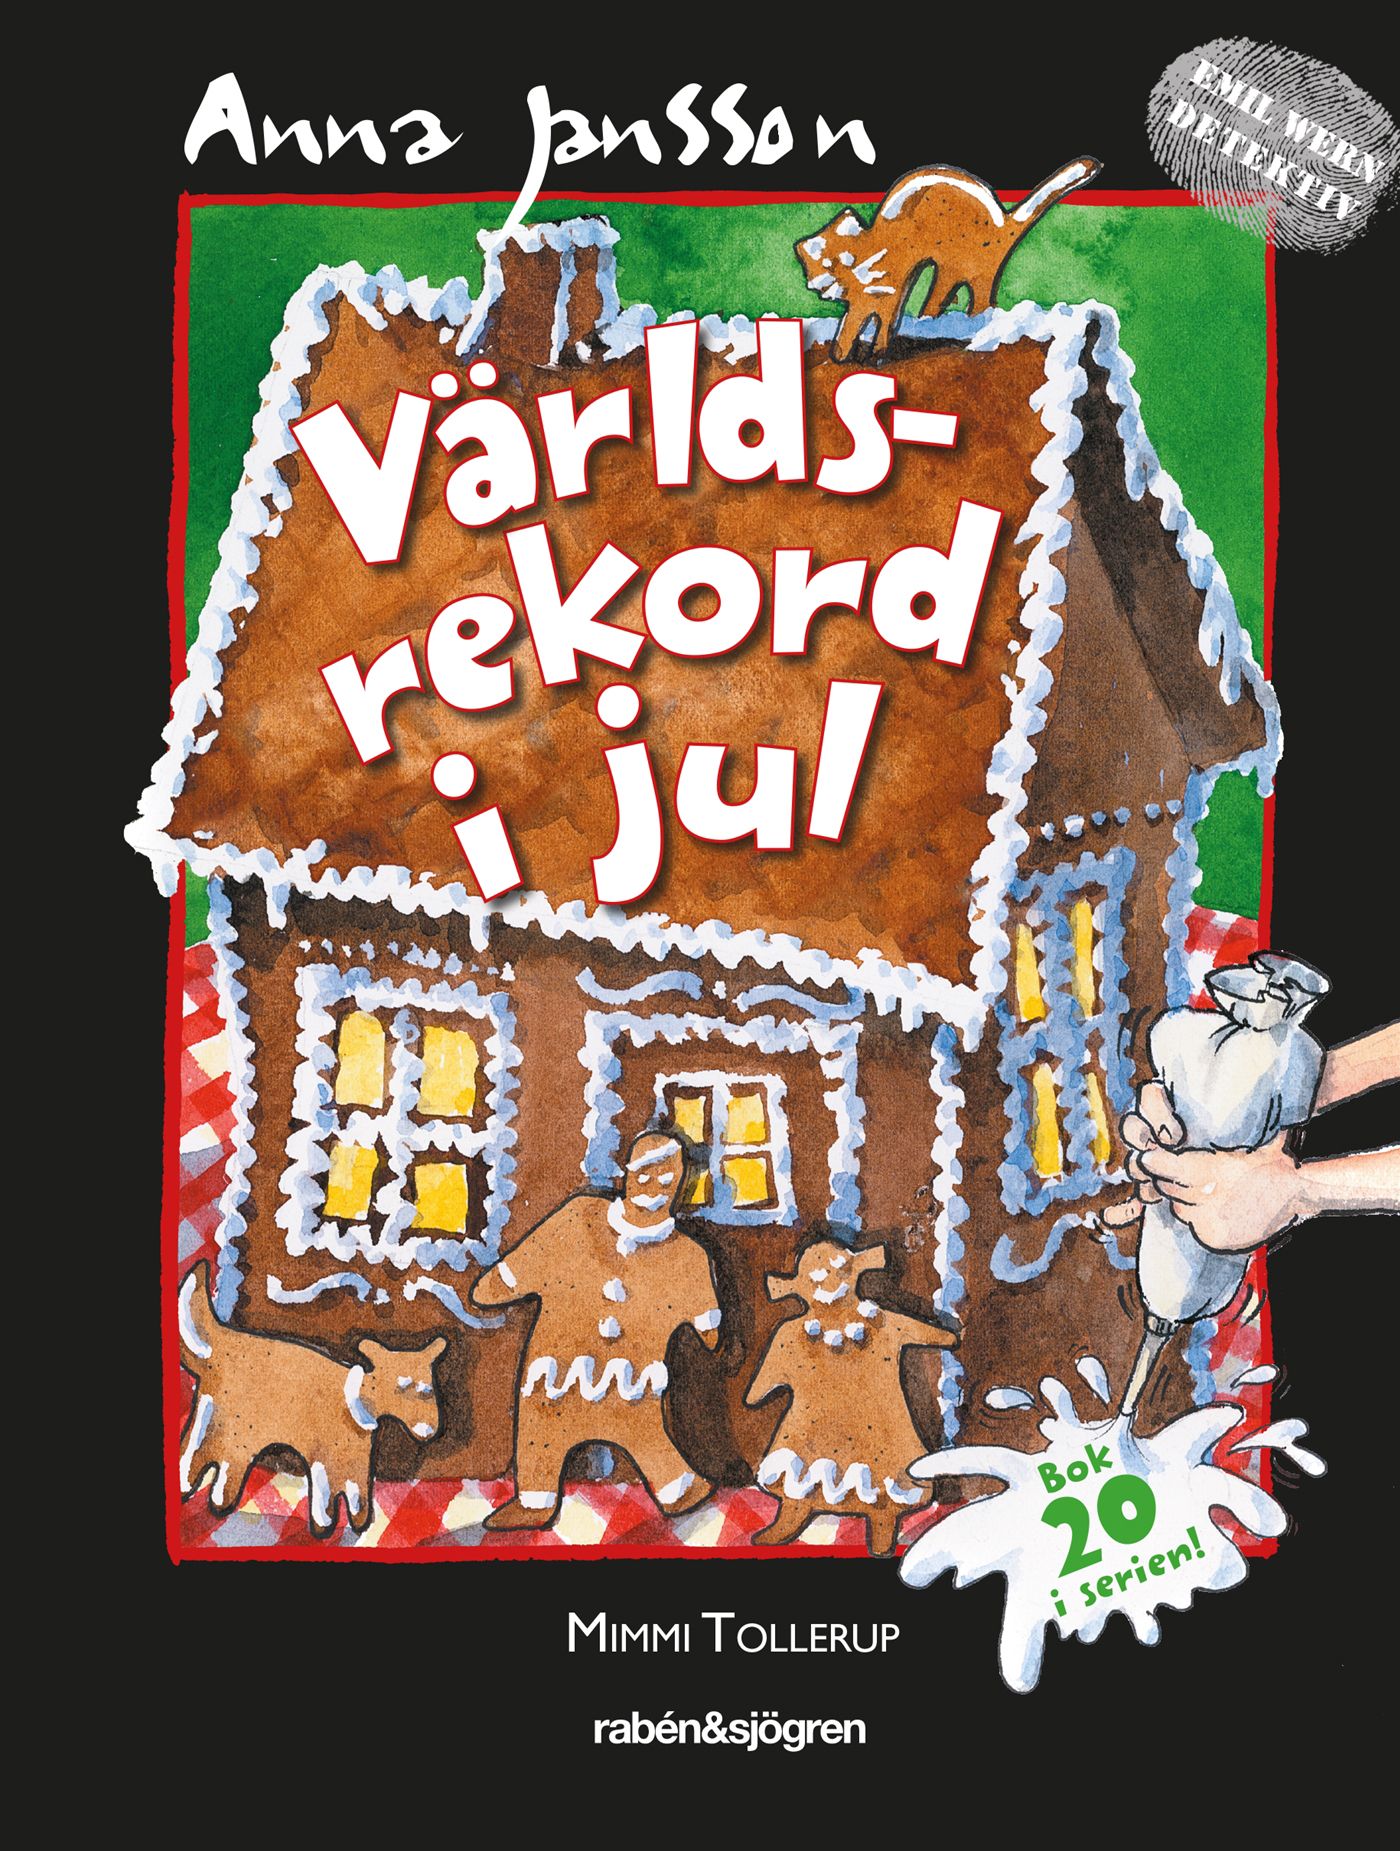 Emil Wern 20 – Världsrekord i jul, eBook by Anna Jansson